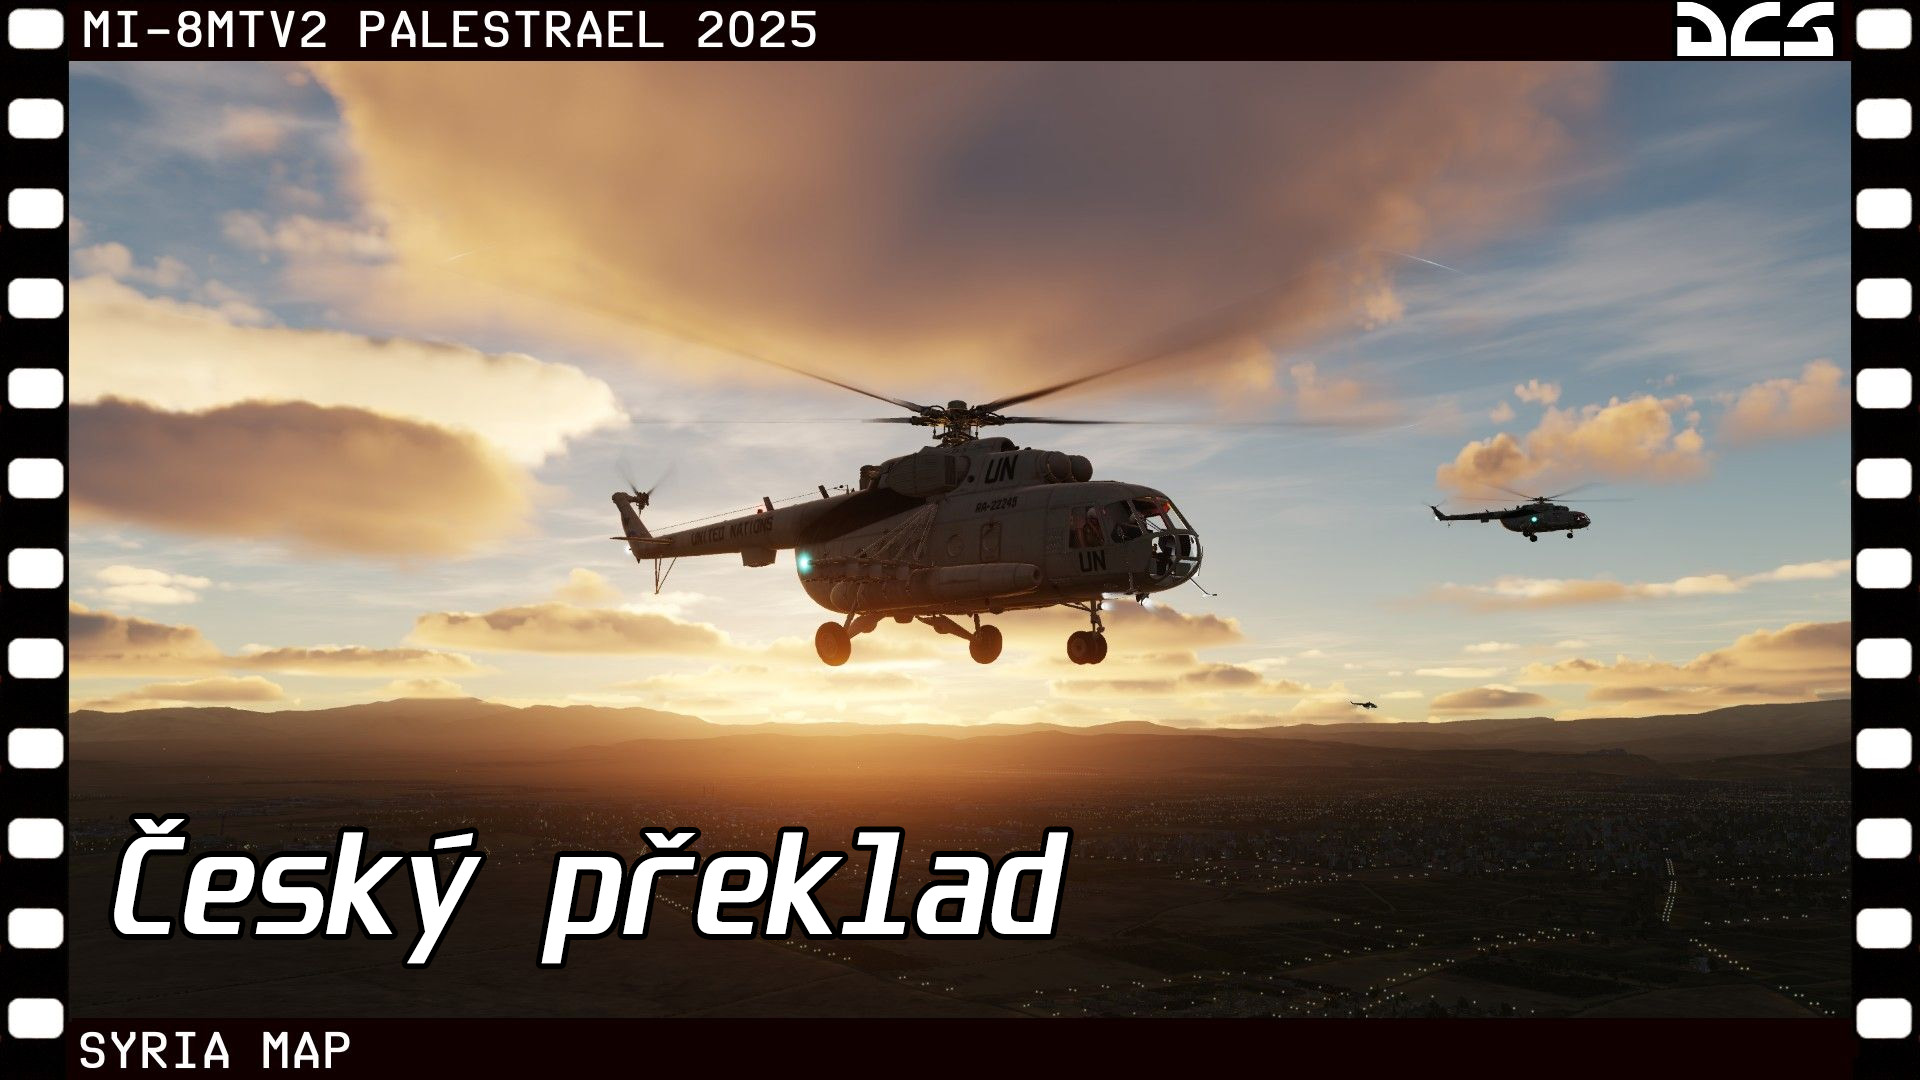 České tytulky kampaně: Mi-8MTV2 Palestrael 25 Campaign